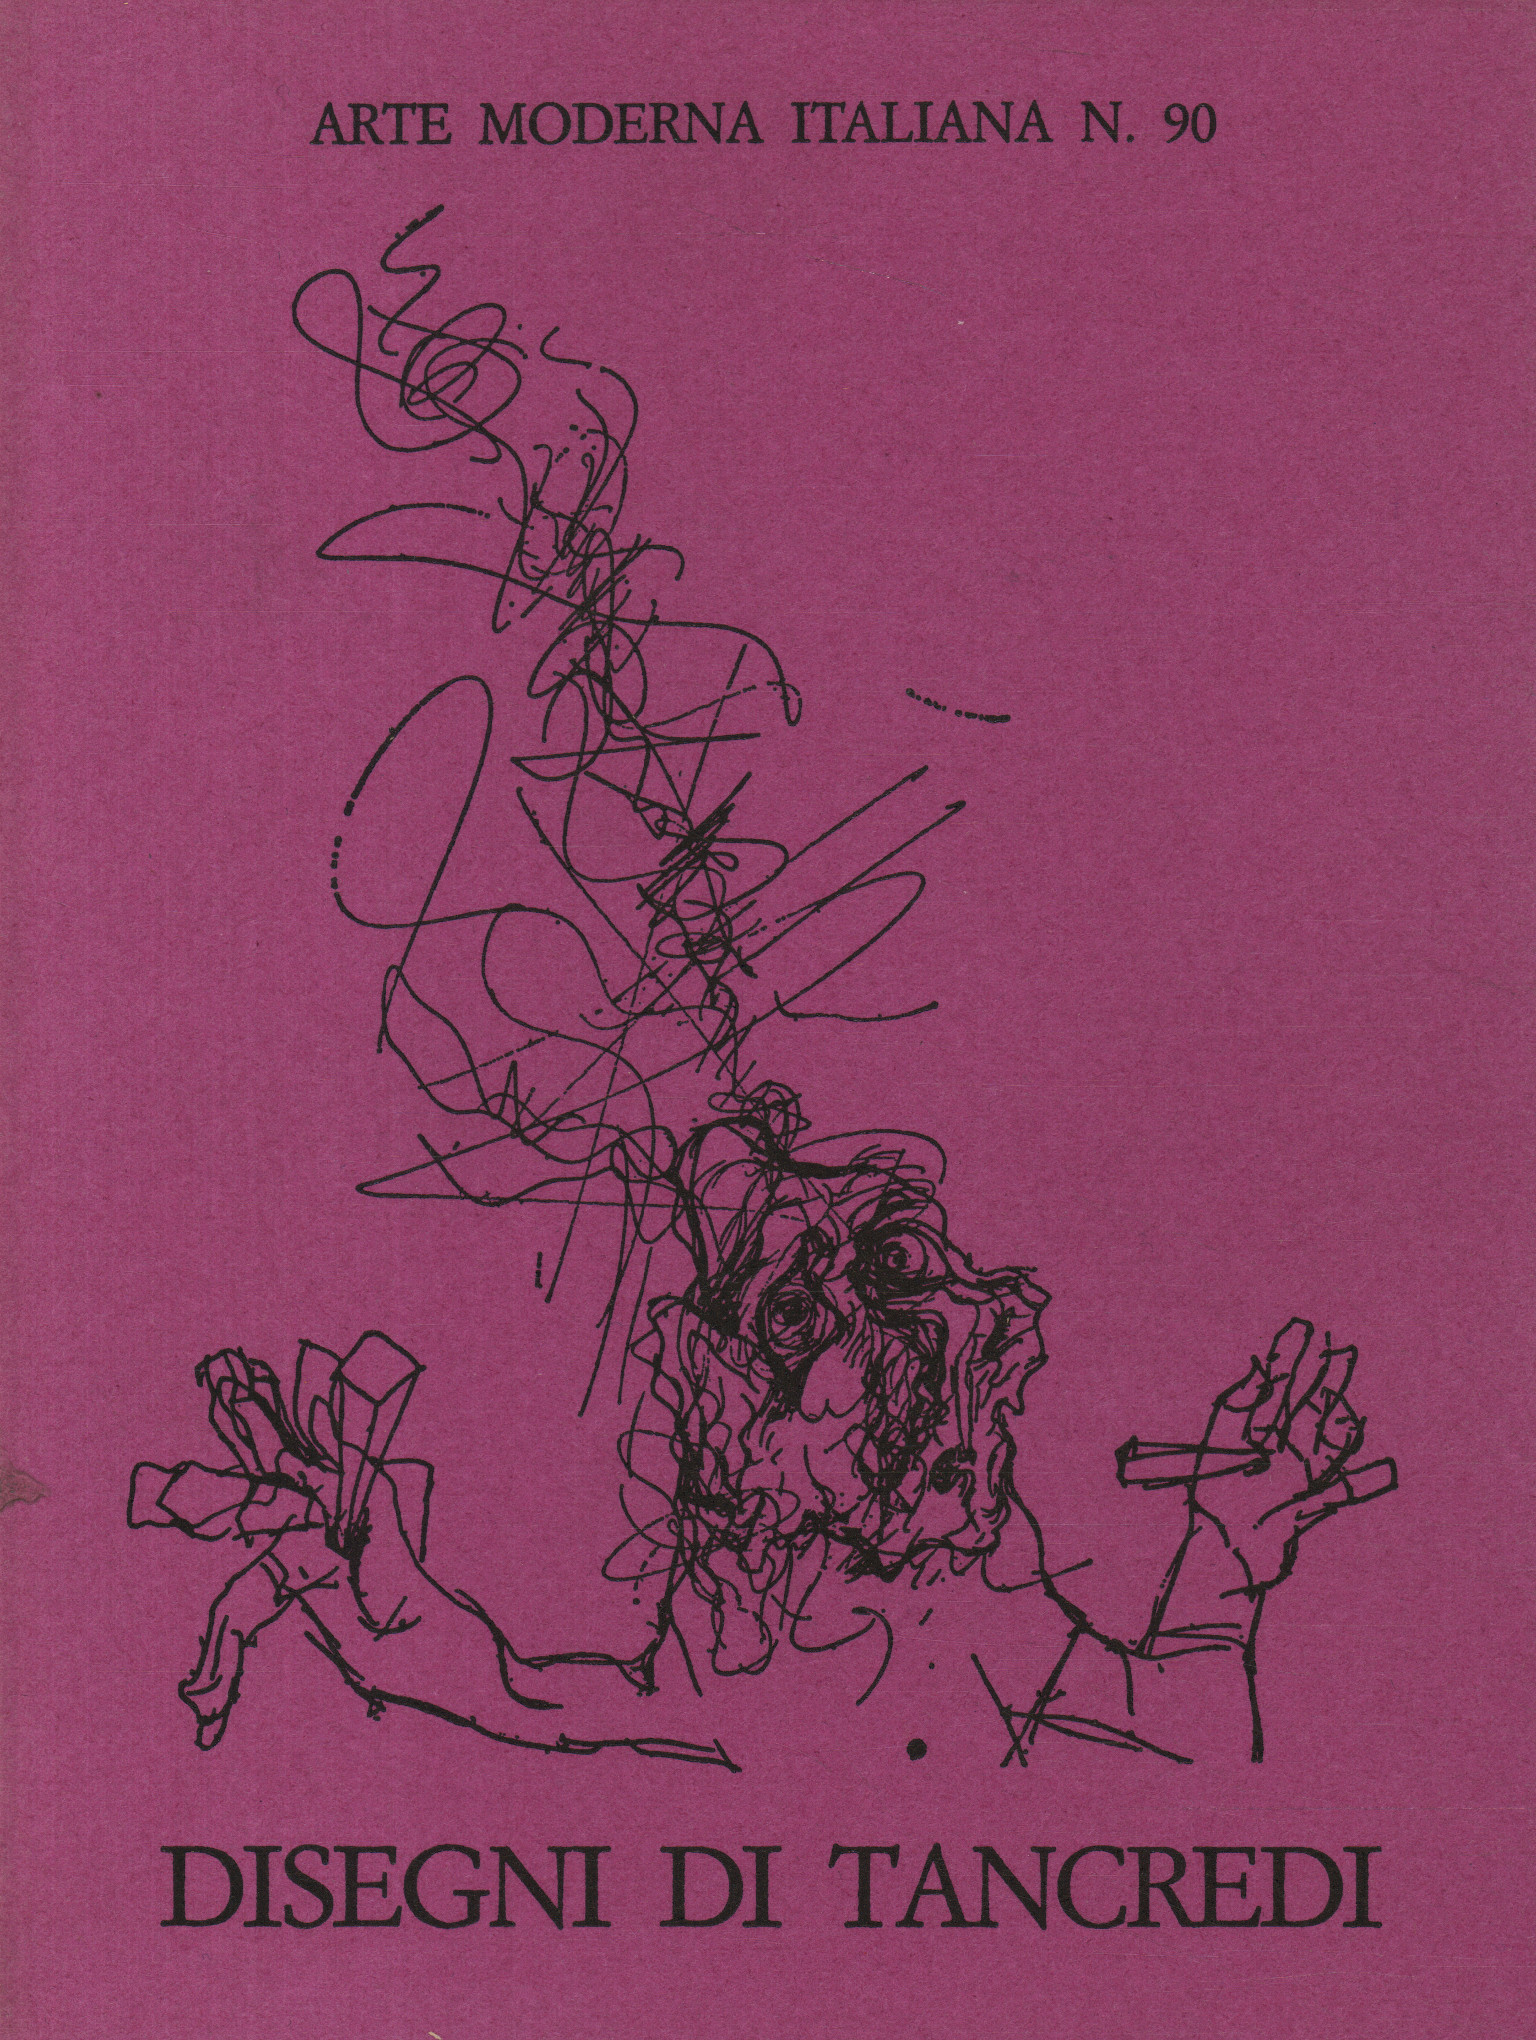 Drawings by Tancredi 1960-1964